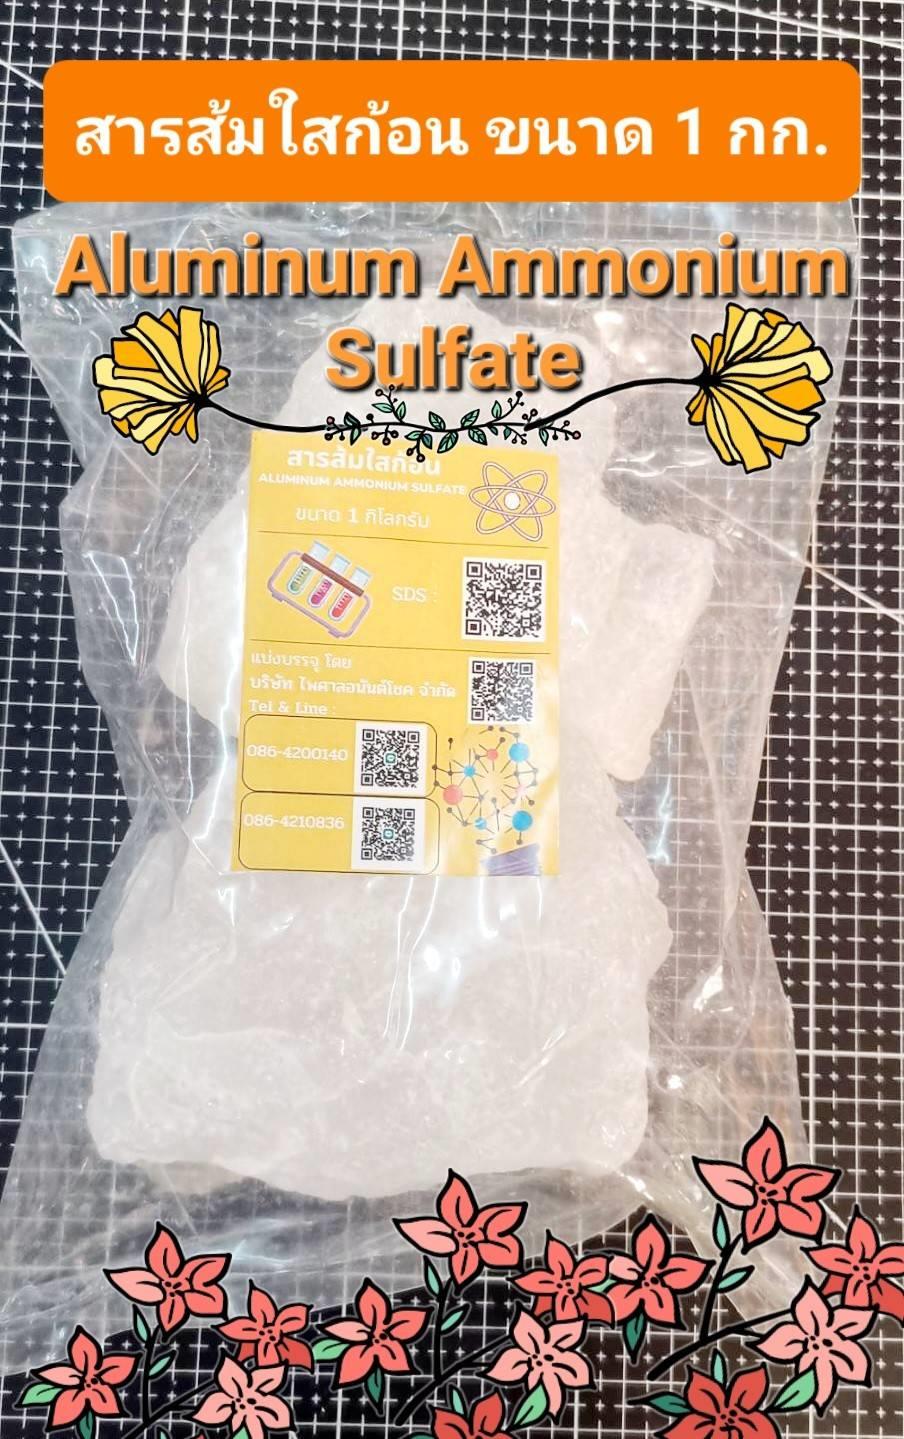 สารส้มใสก้อน 1 กก. Aluminum Ammonium Sulfate,สารส้มใสก้อน 1 กก. Aluminum Ammonium Sulfate,,Chemicals/General Chemicals